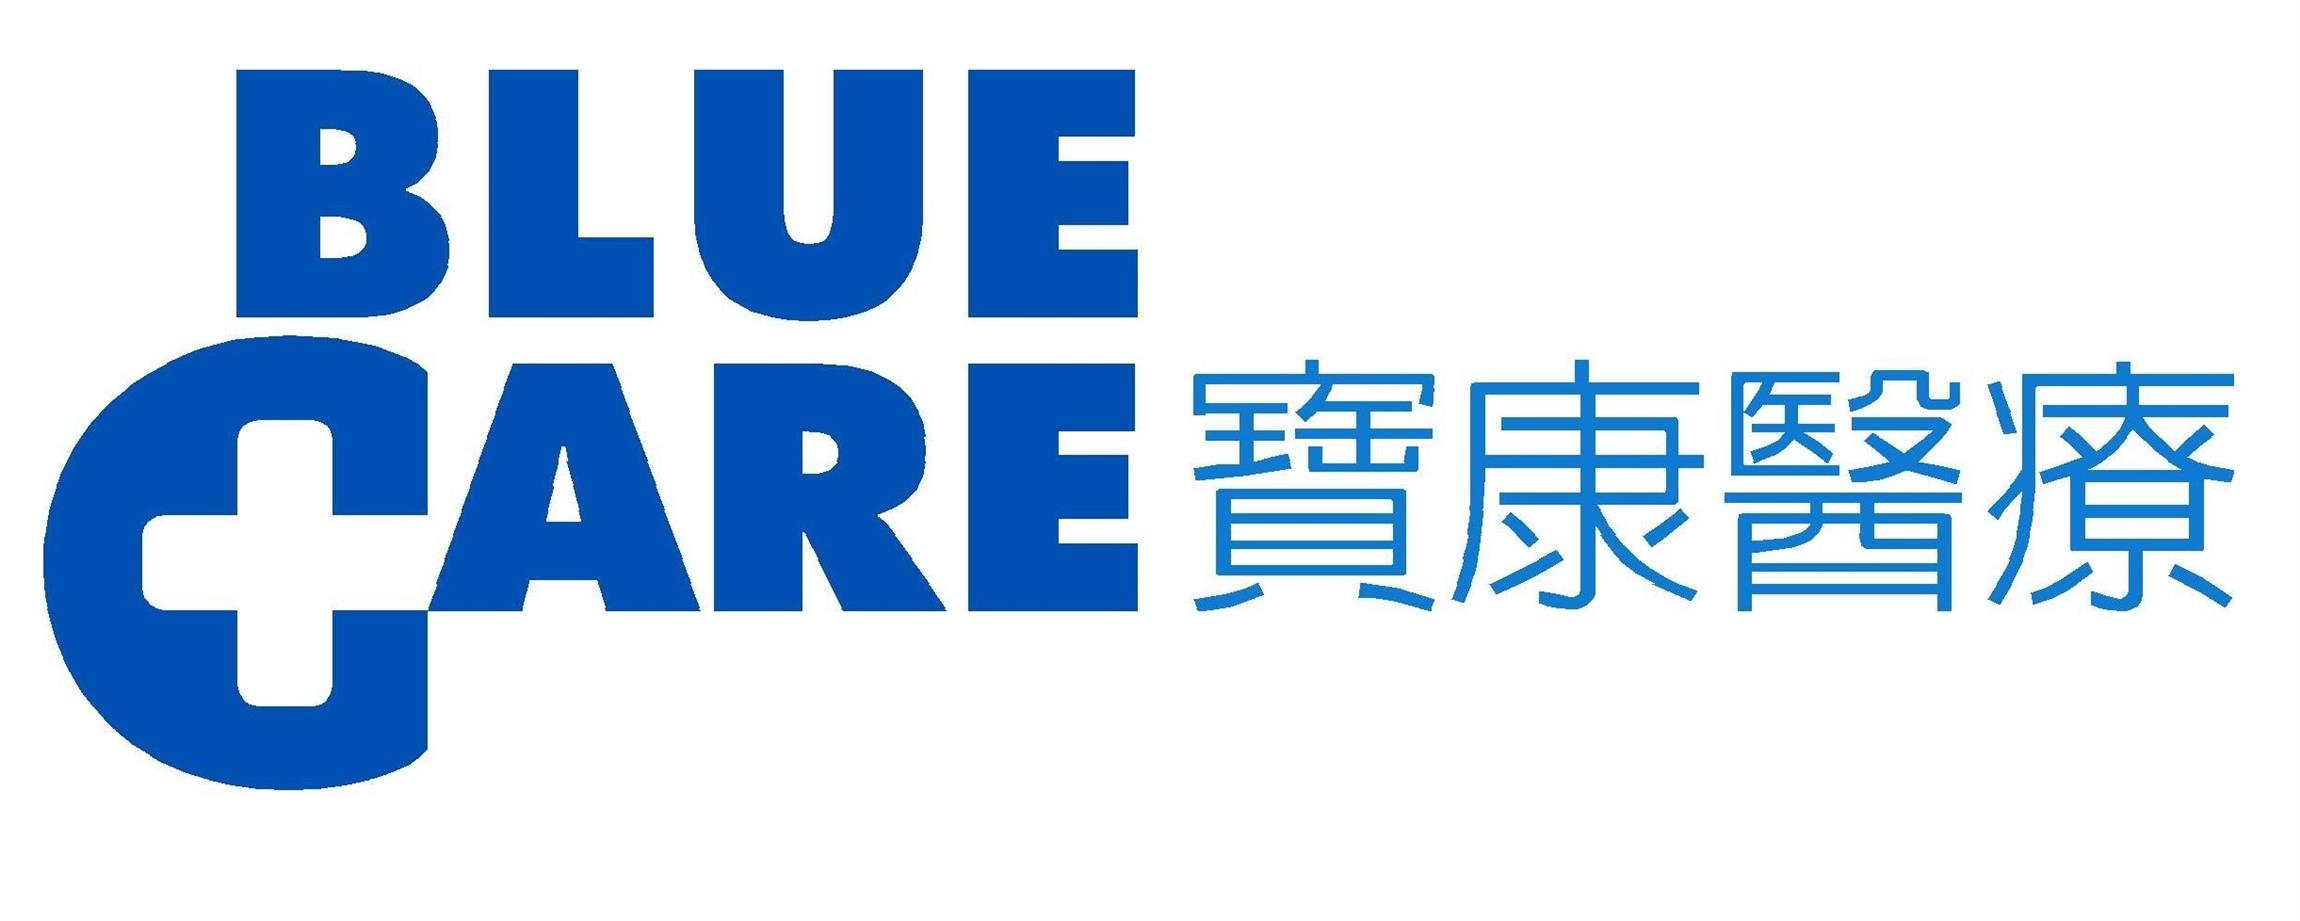 Blue Care Logo